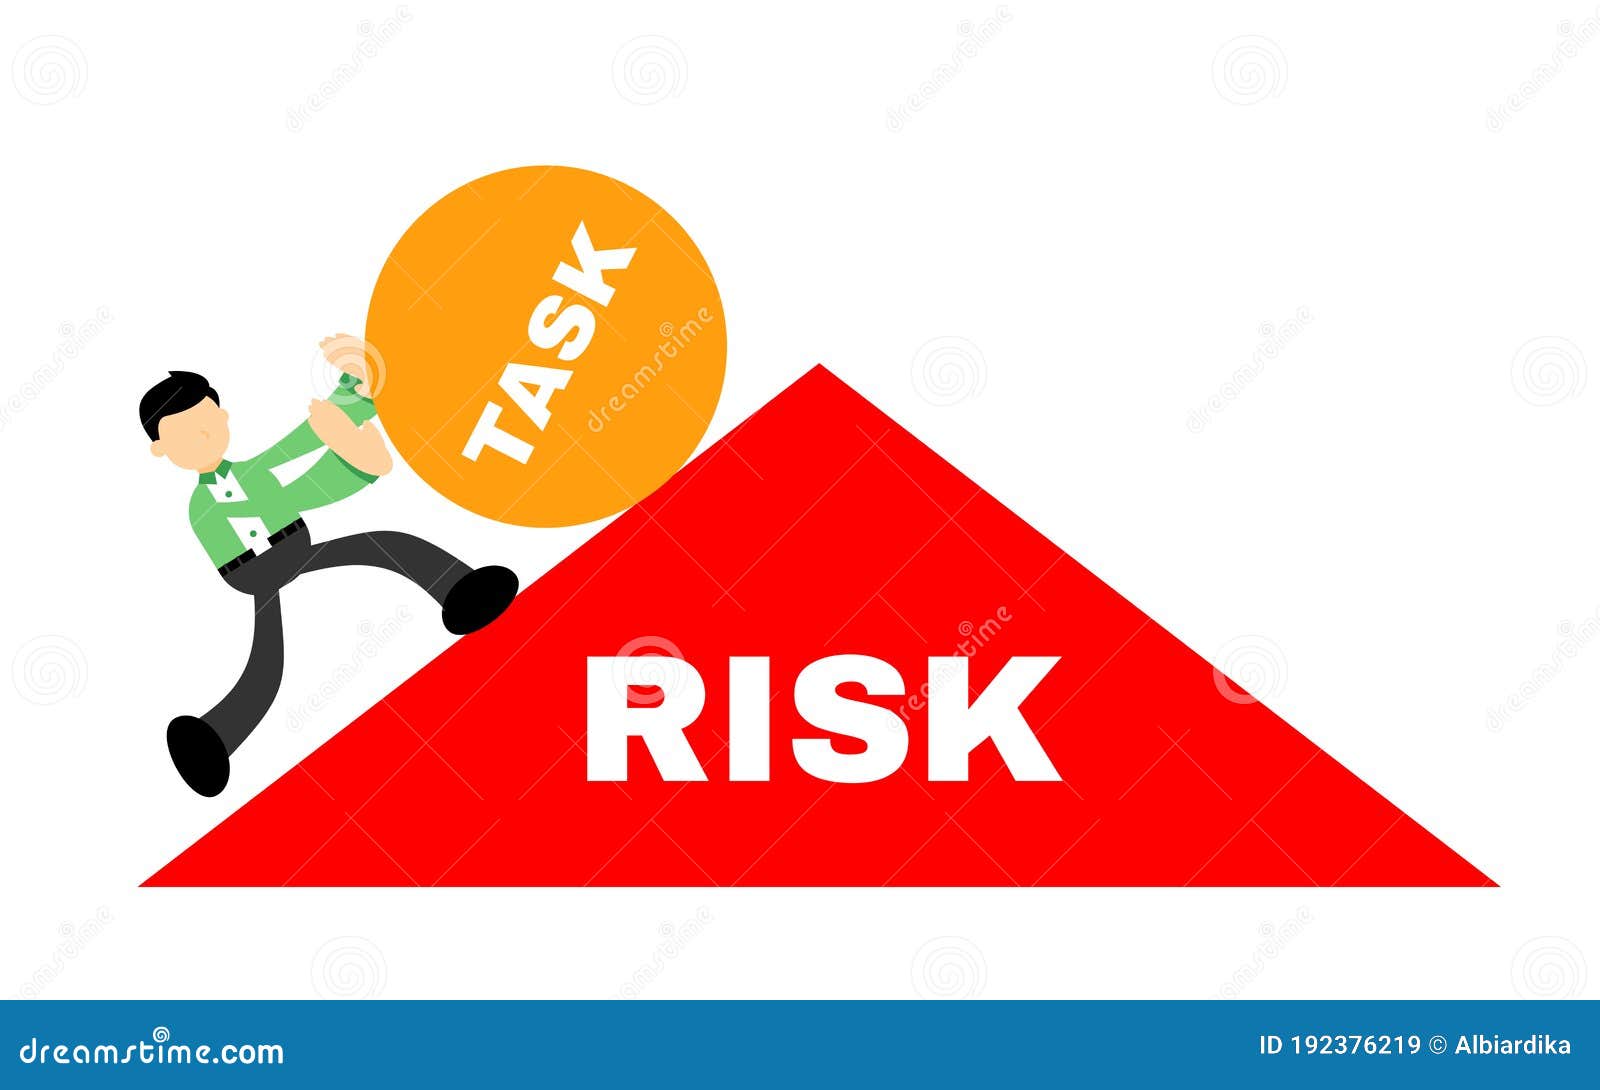 风险分析过程中的风险事件及影响因素 - 风险雷达